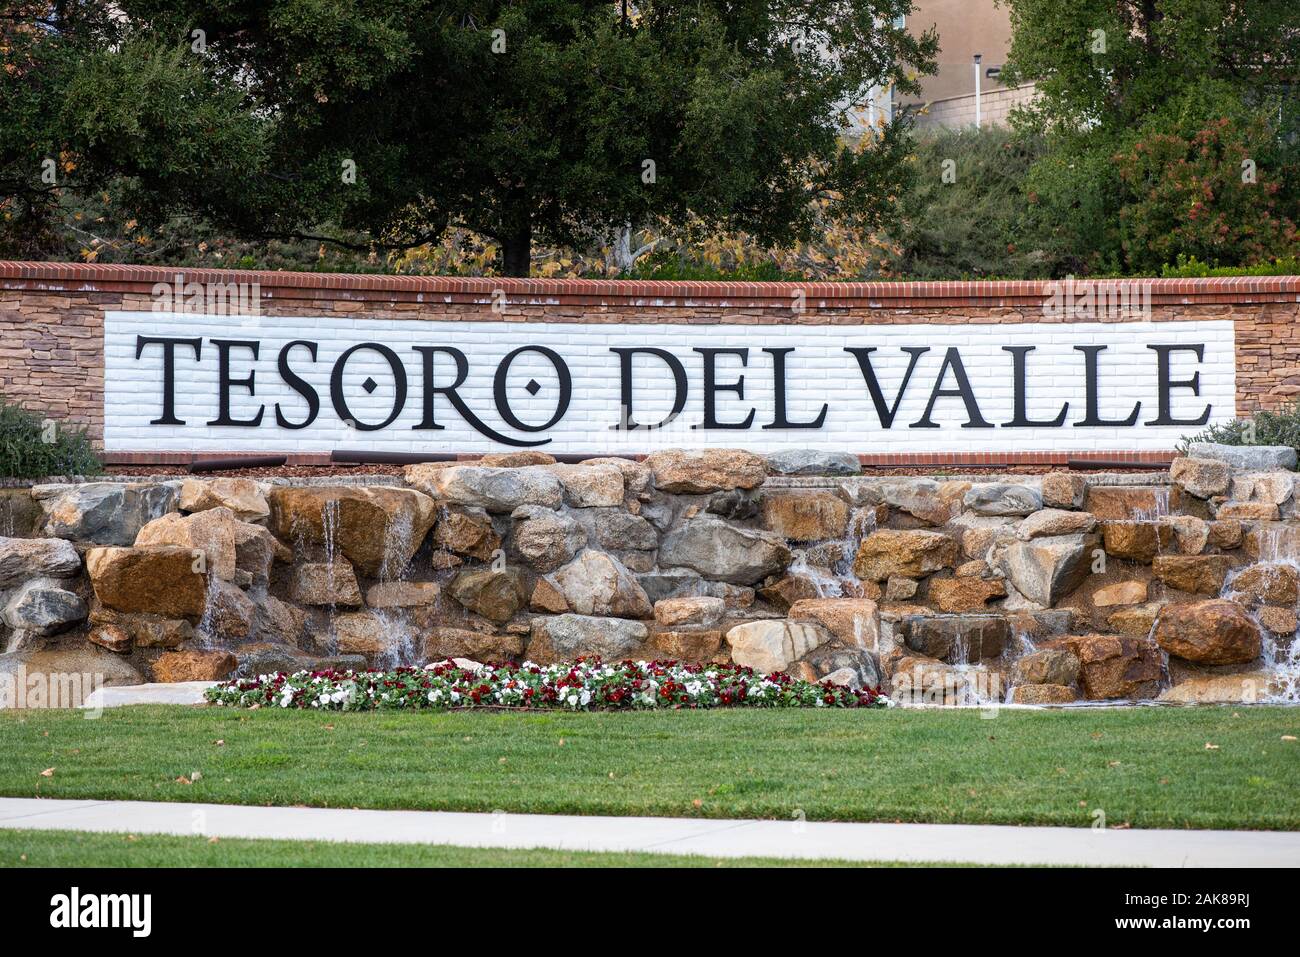 01/01/2020 - Santa Clarita, CA: Tesoro Del Valle community sign in Valencia, CA, USA. Stock Photo